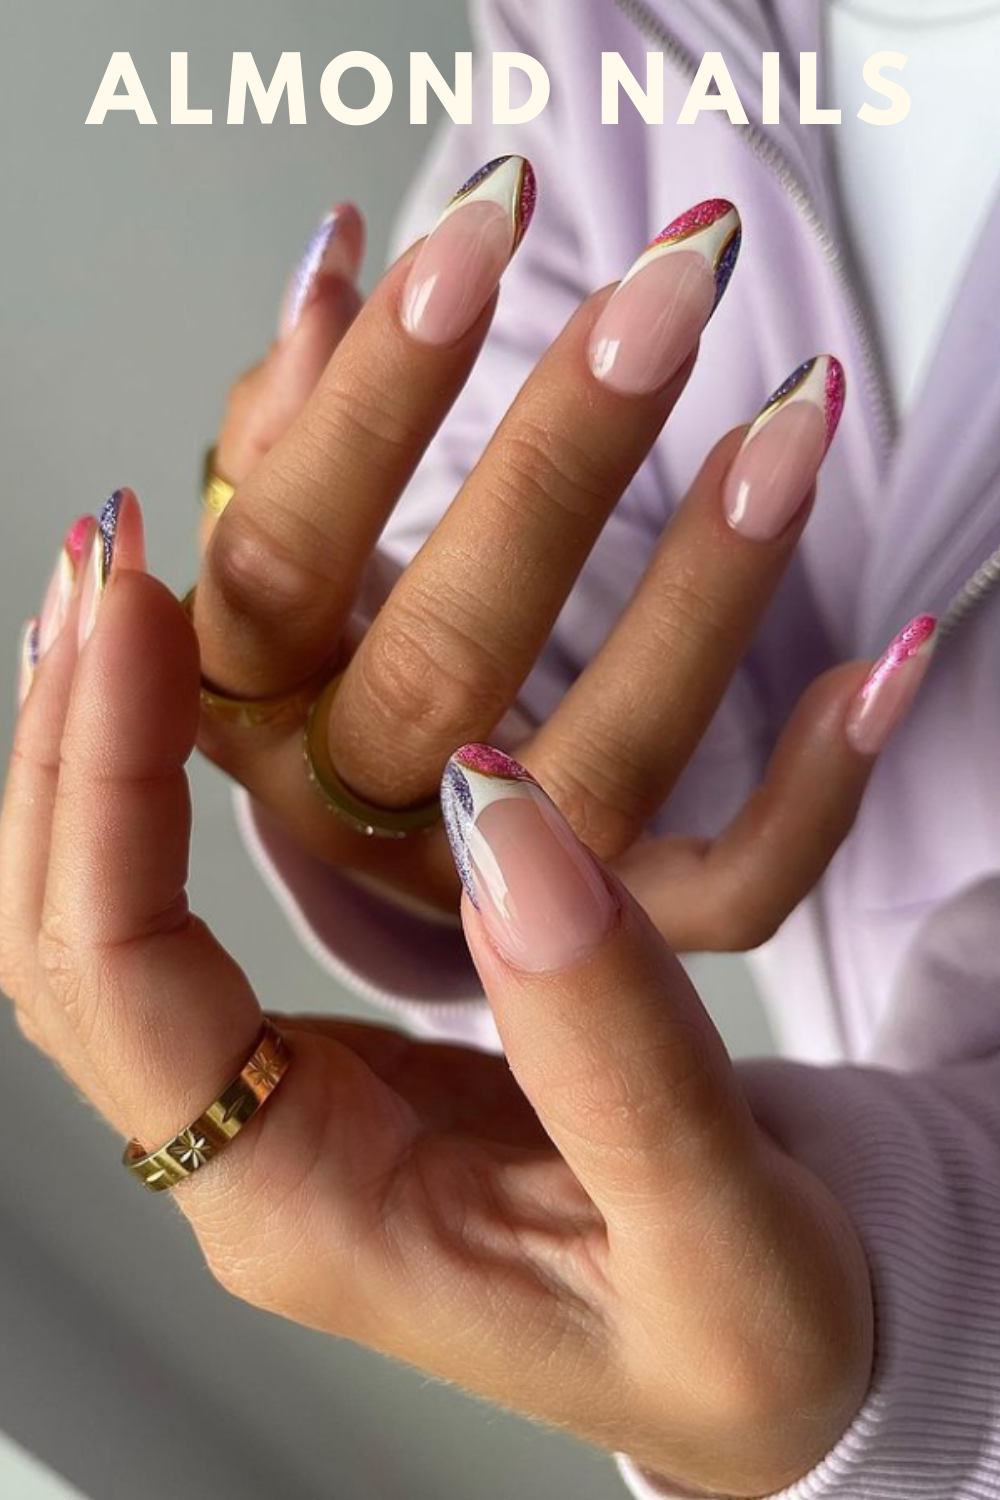 Glitter and white almond nail art design